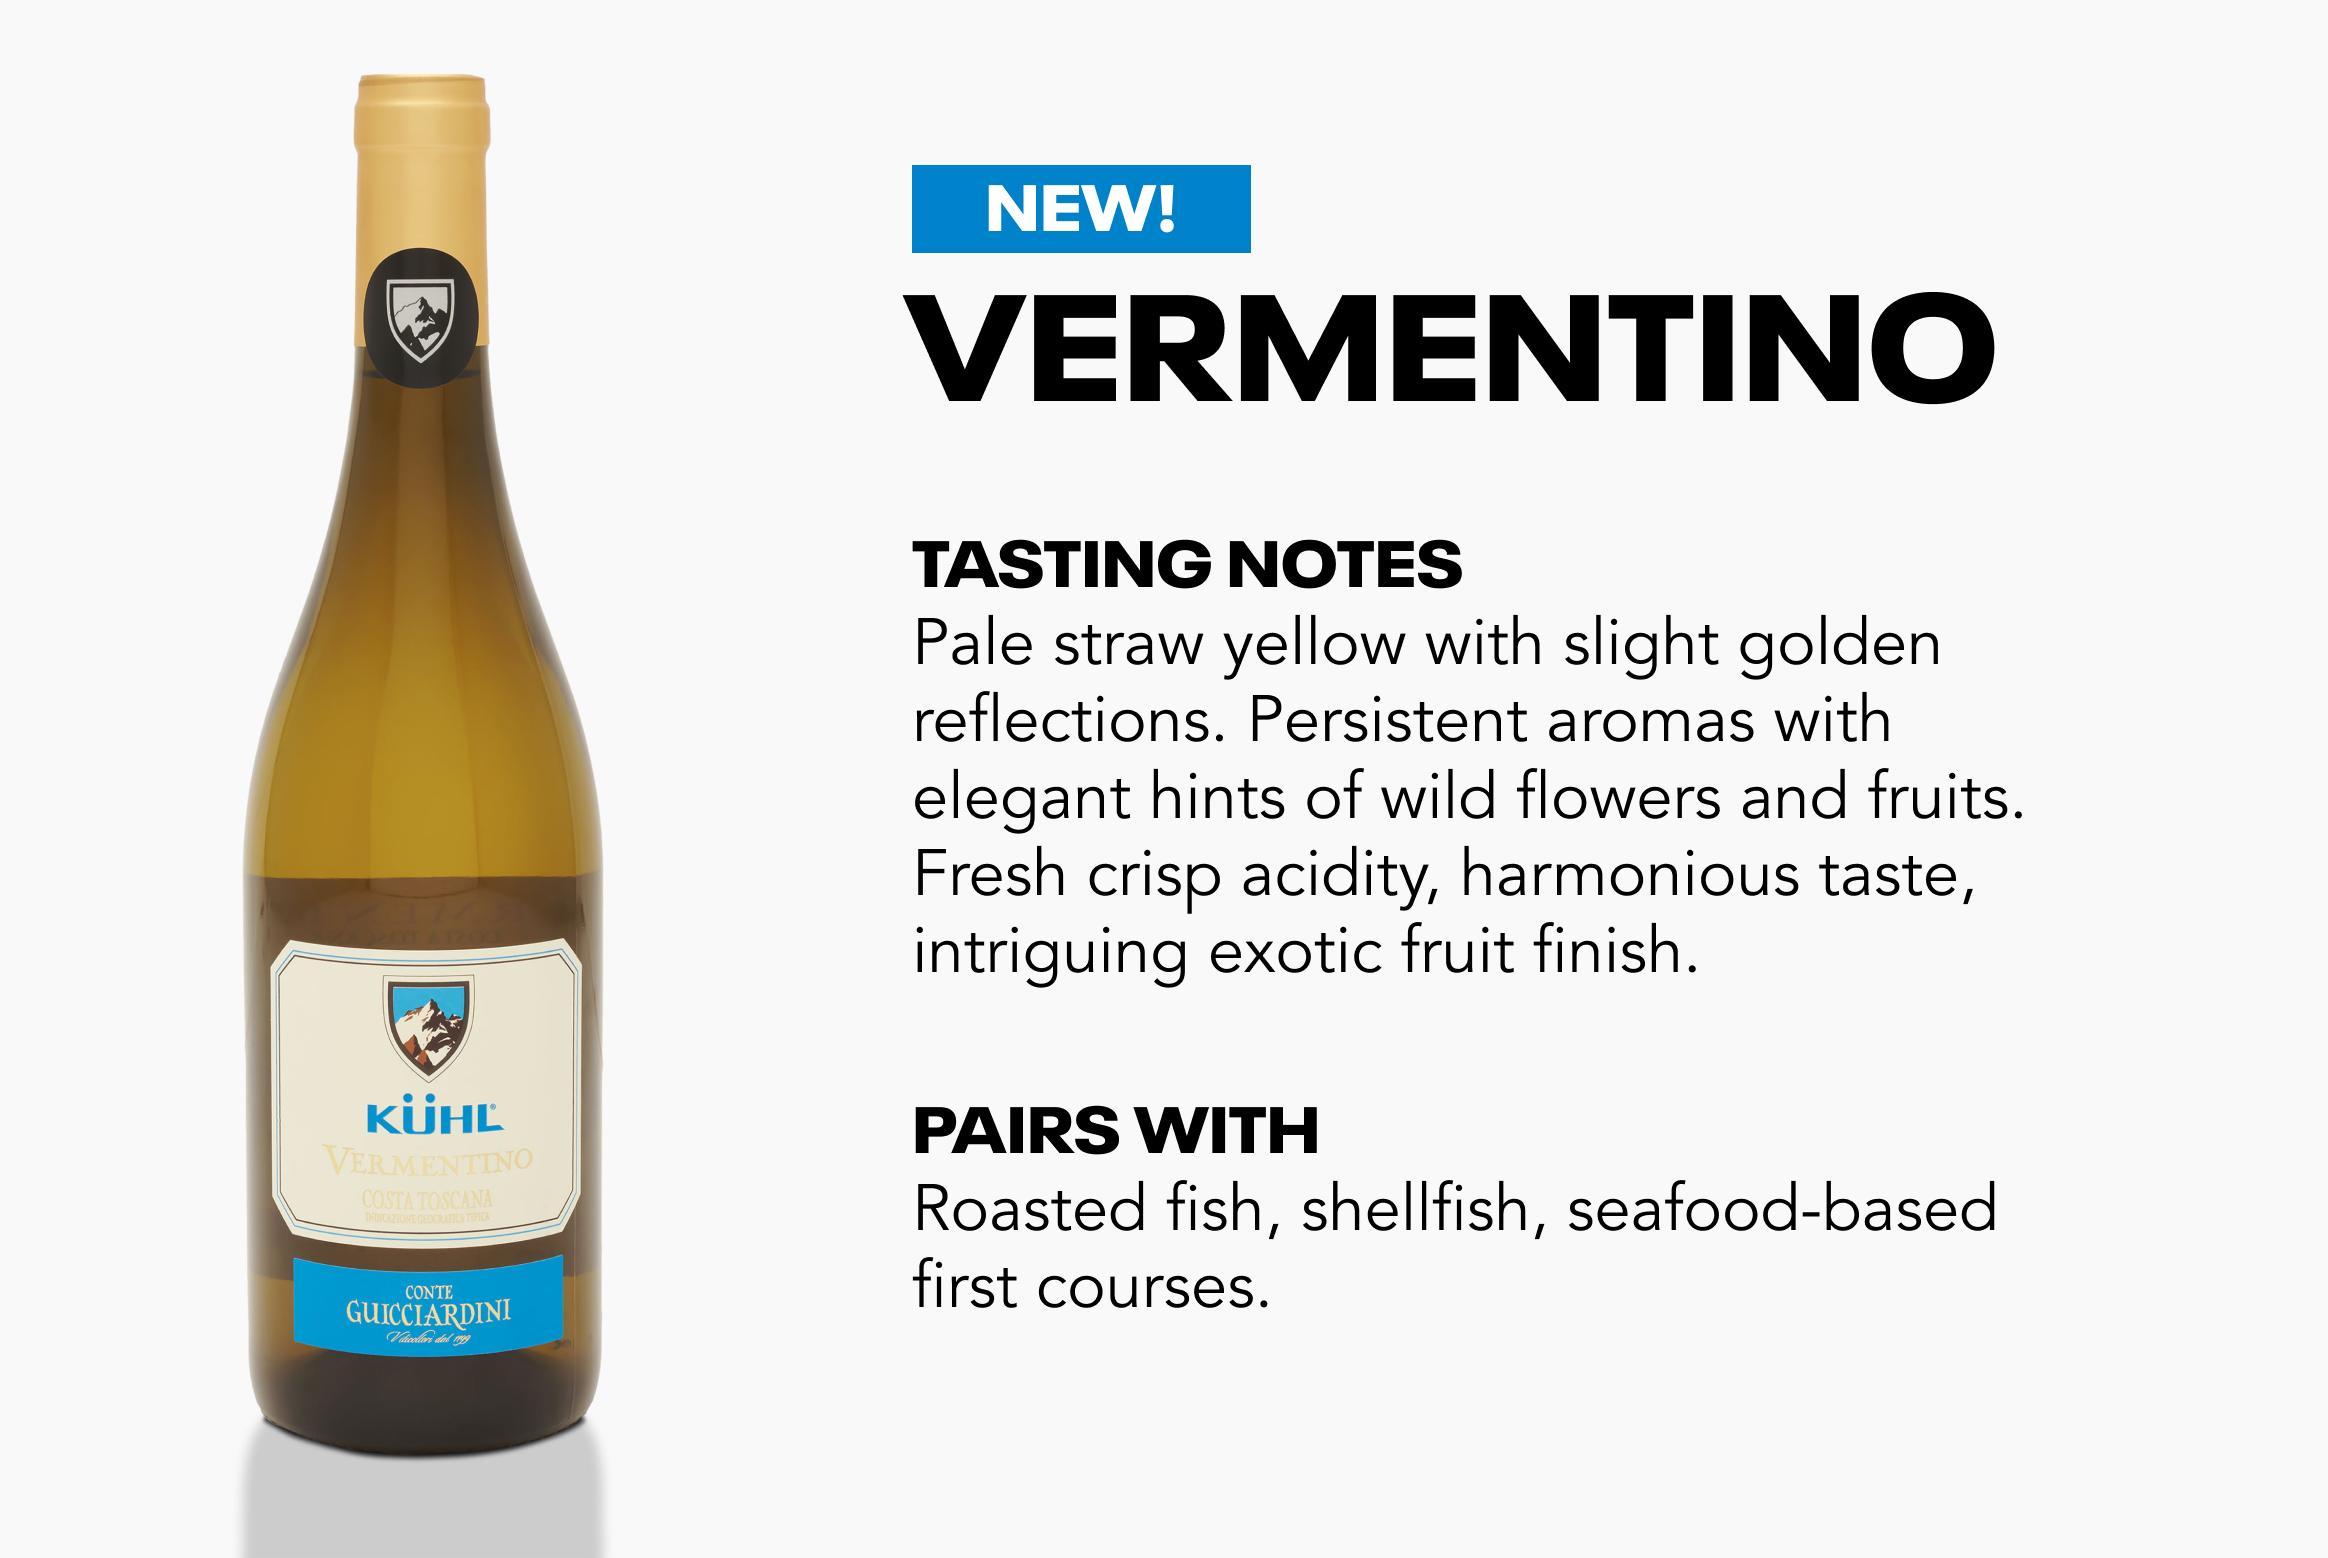 Verementio wine and info